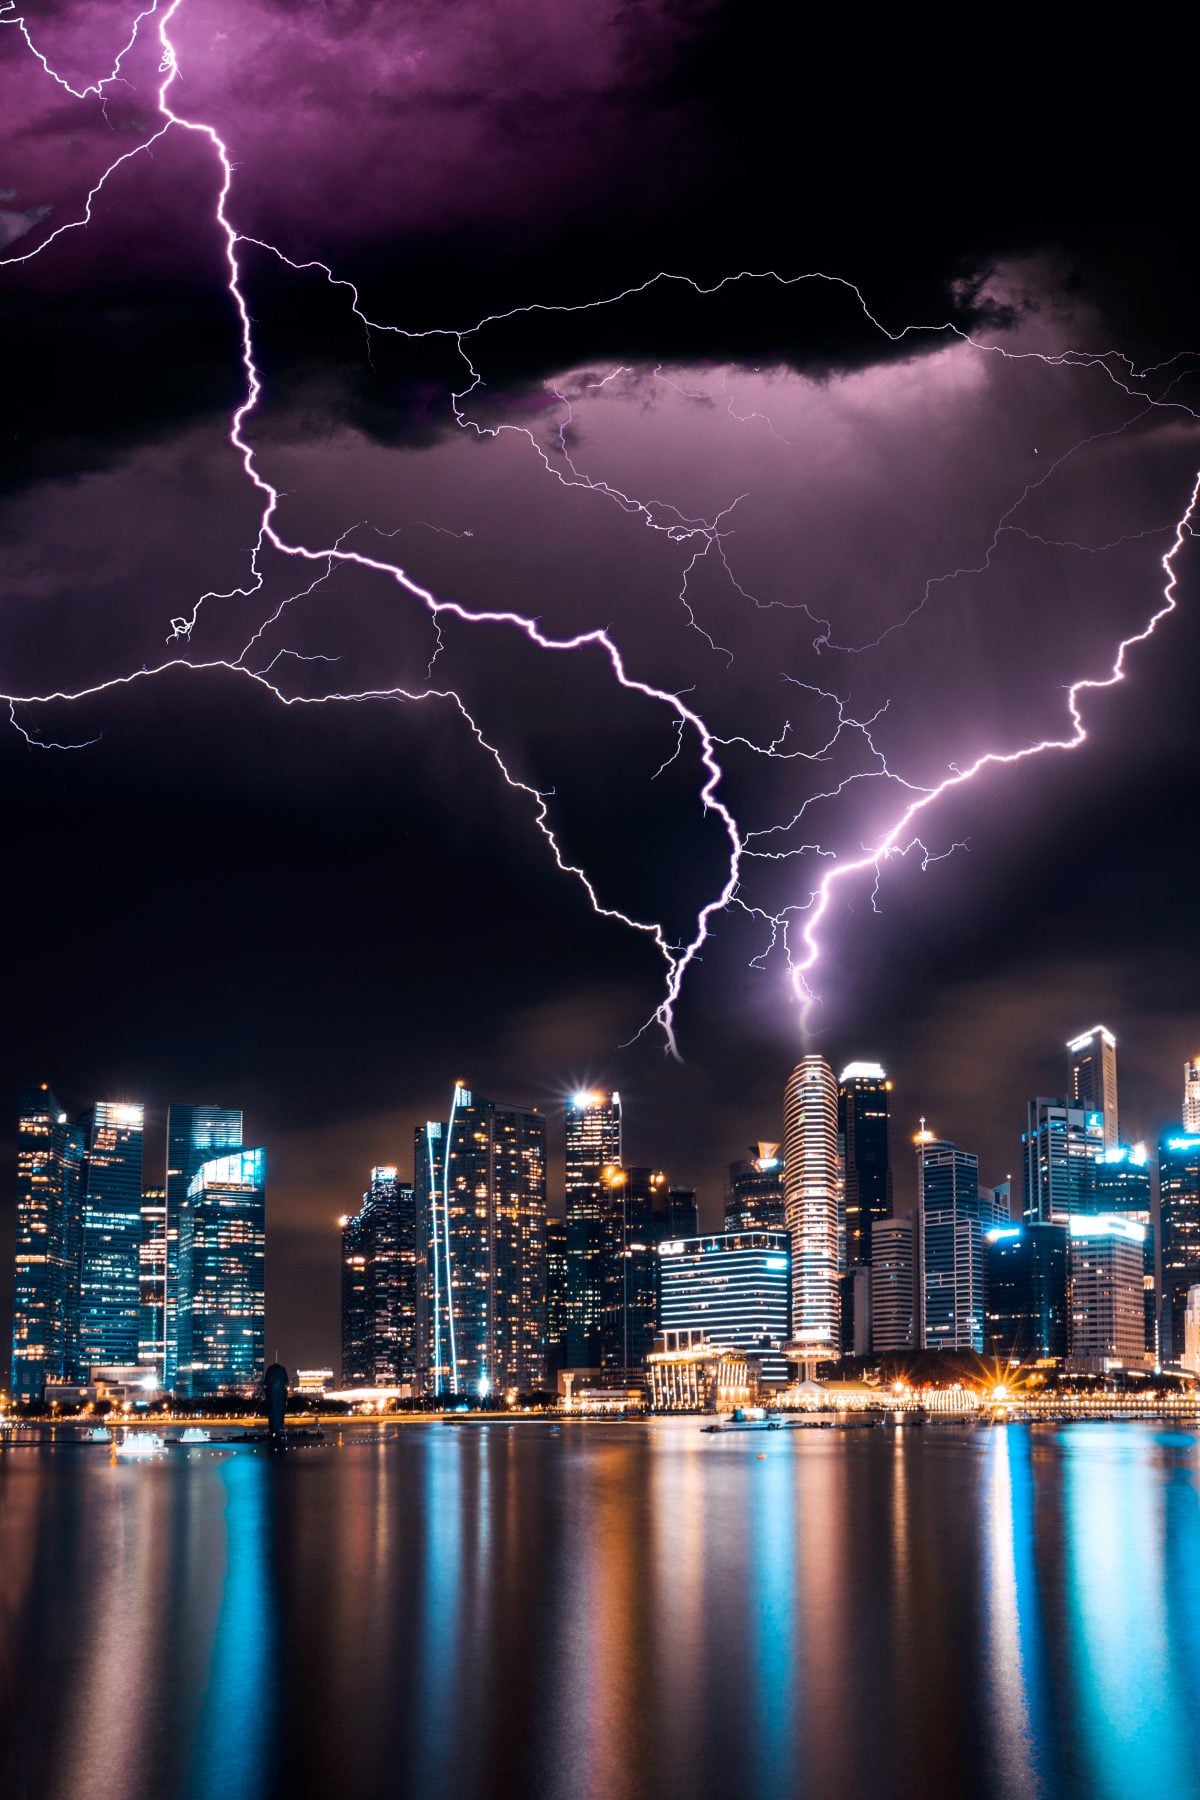 lightning over city